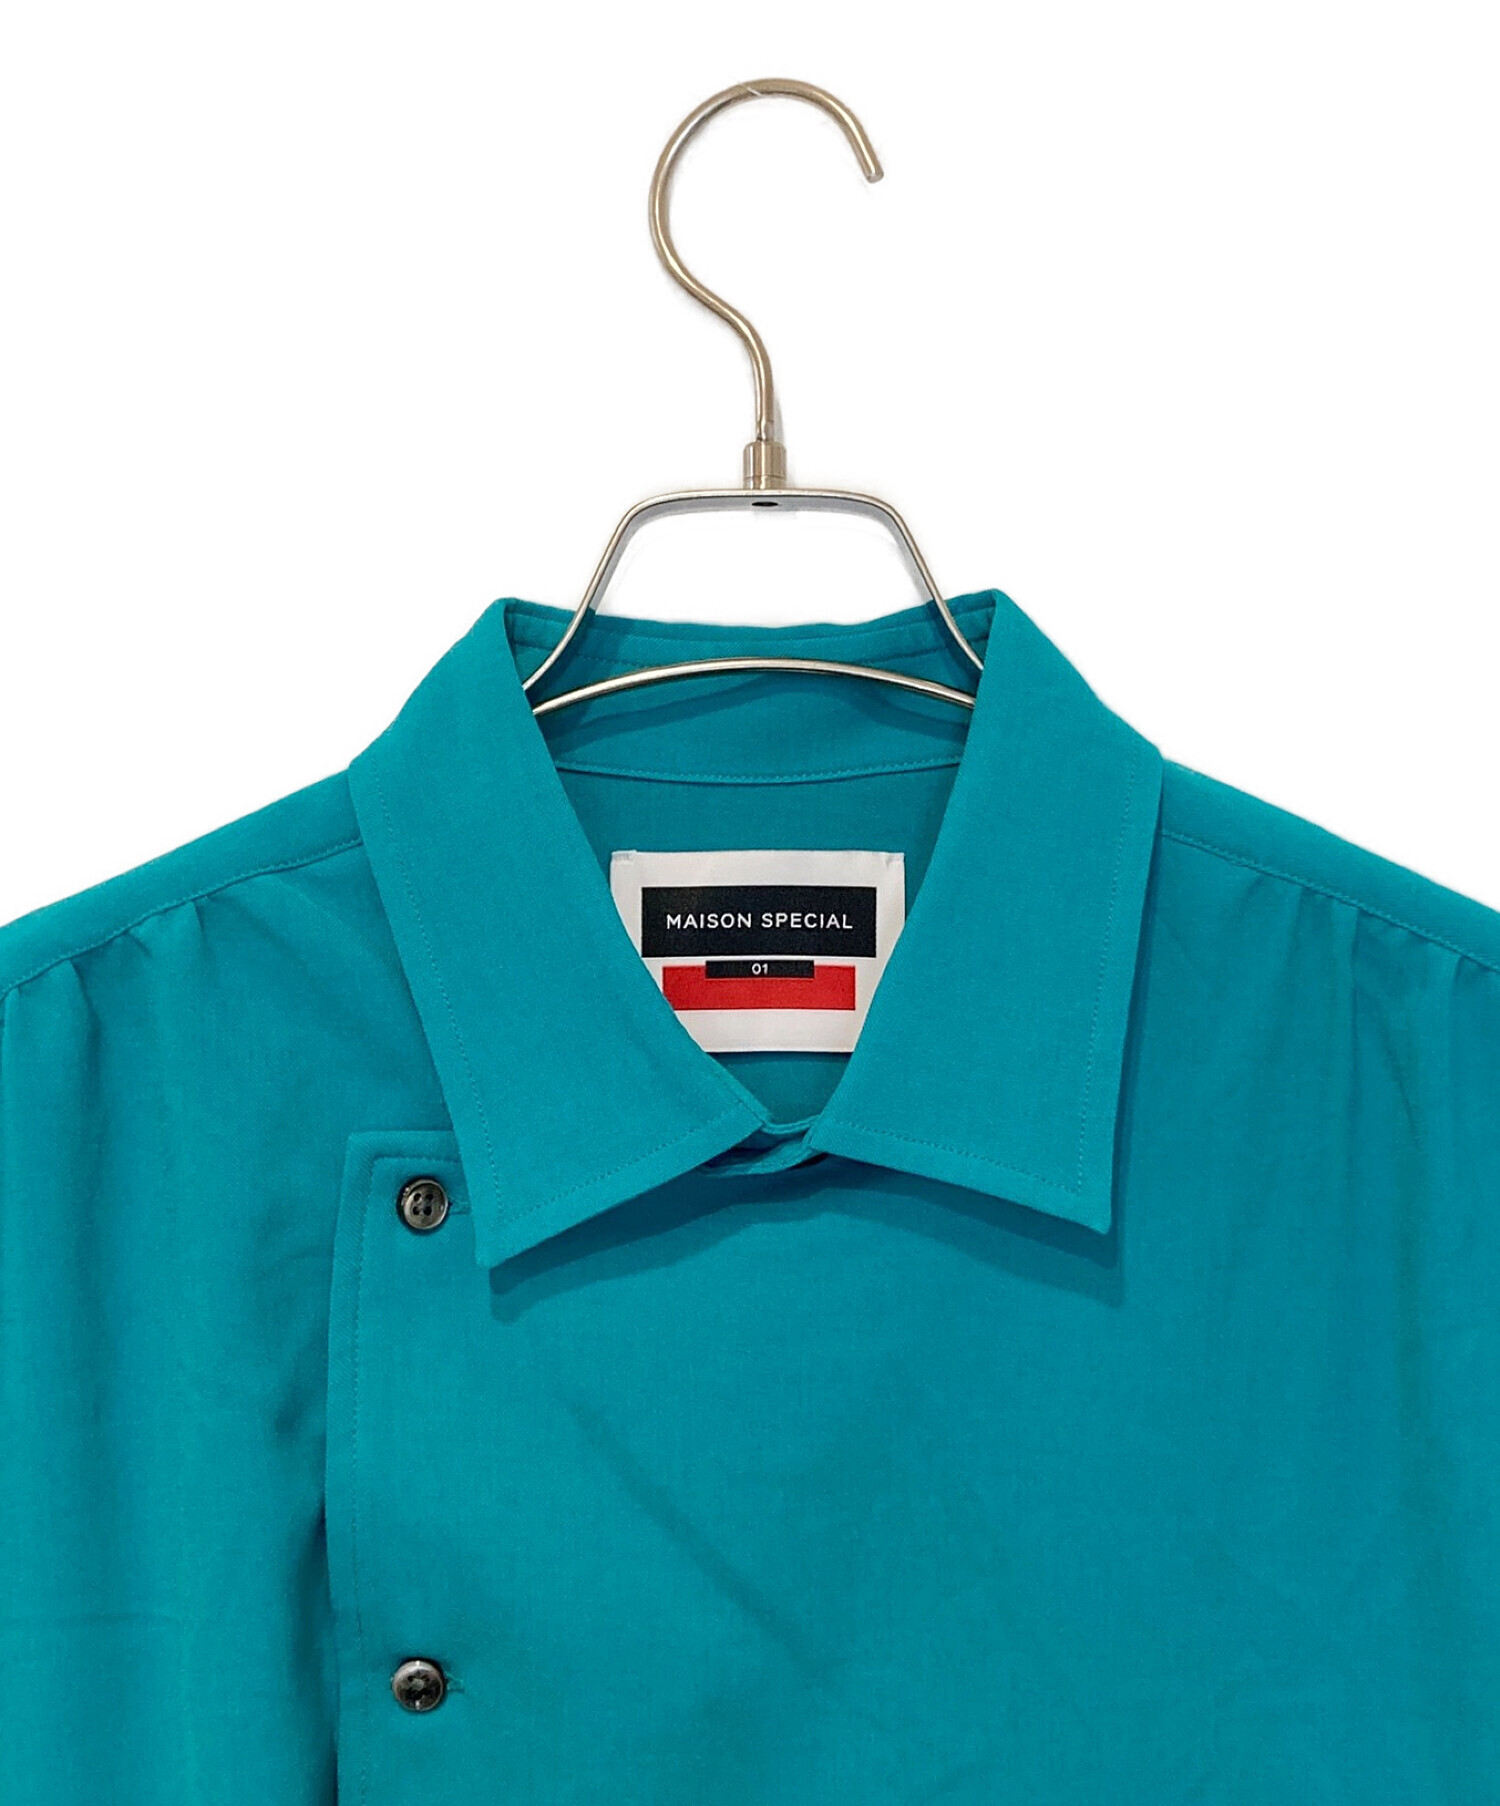 MAISON SPECIAL (メゾンスペシャル) プライムオーバーセミダブルシャーリングショートスリーブシャツ ブルー サイズ:1